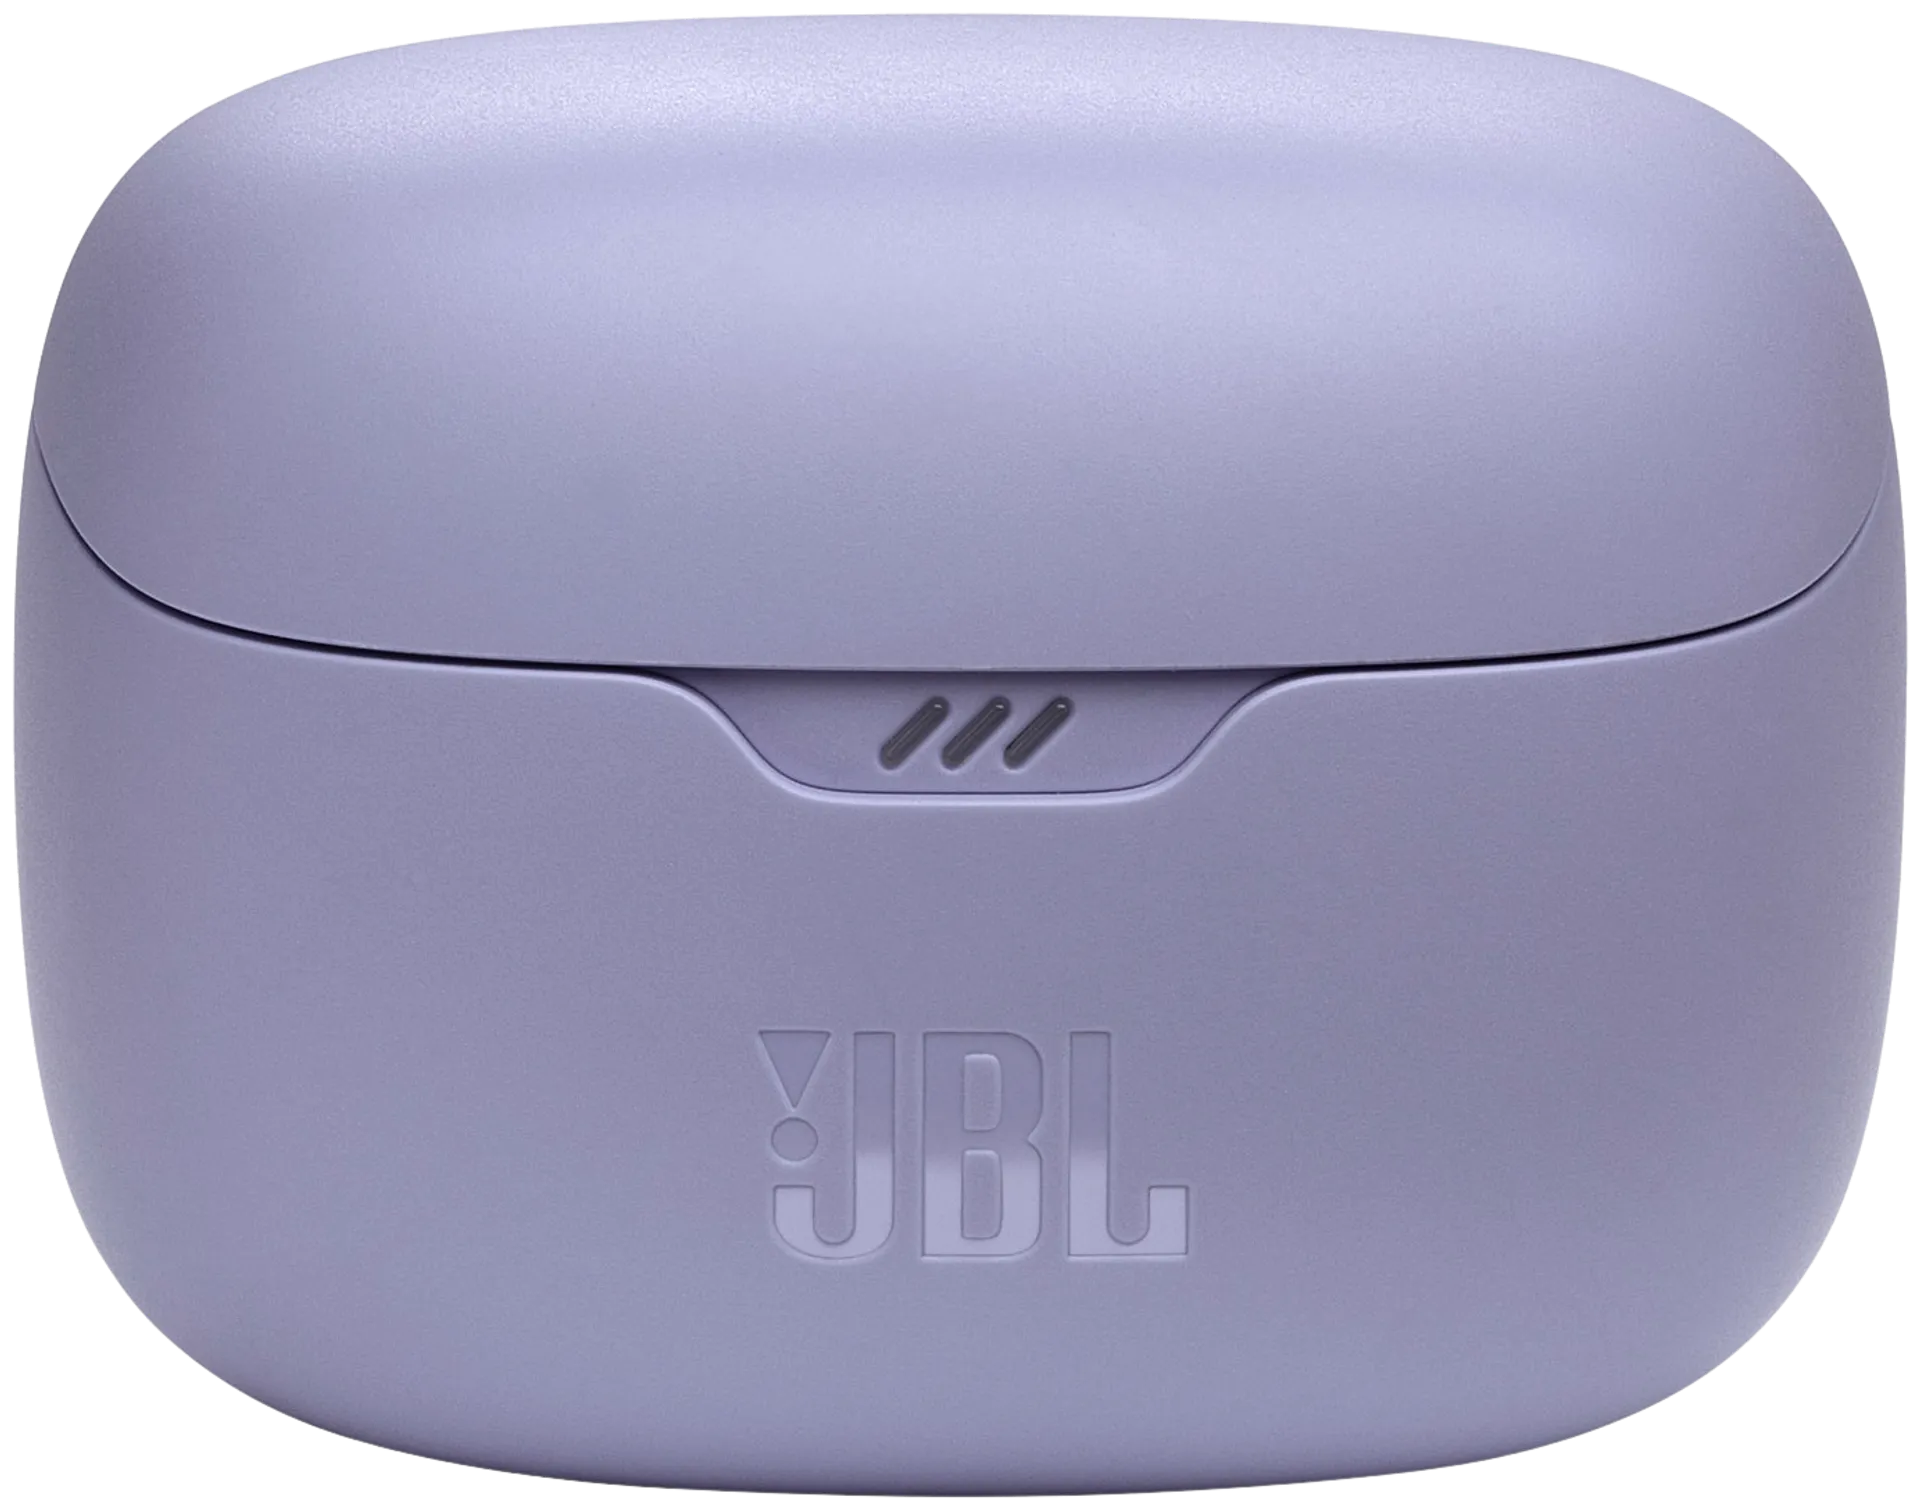 JBL Bluetooth nappikuulokkeet Tune Beam violetti - 5